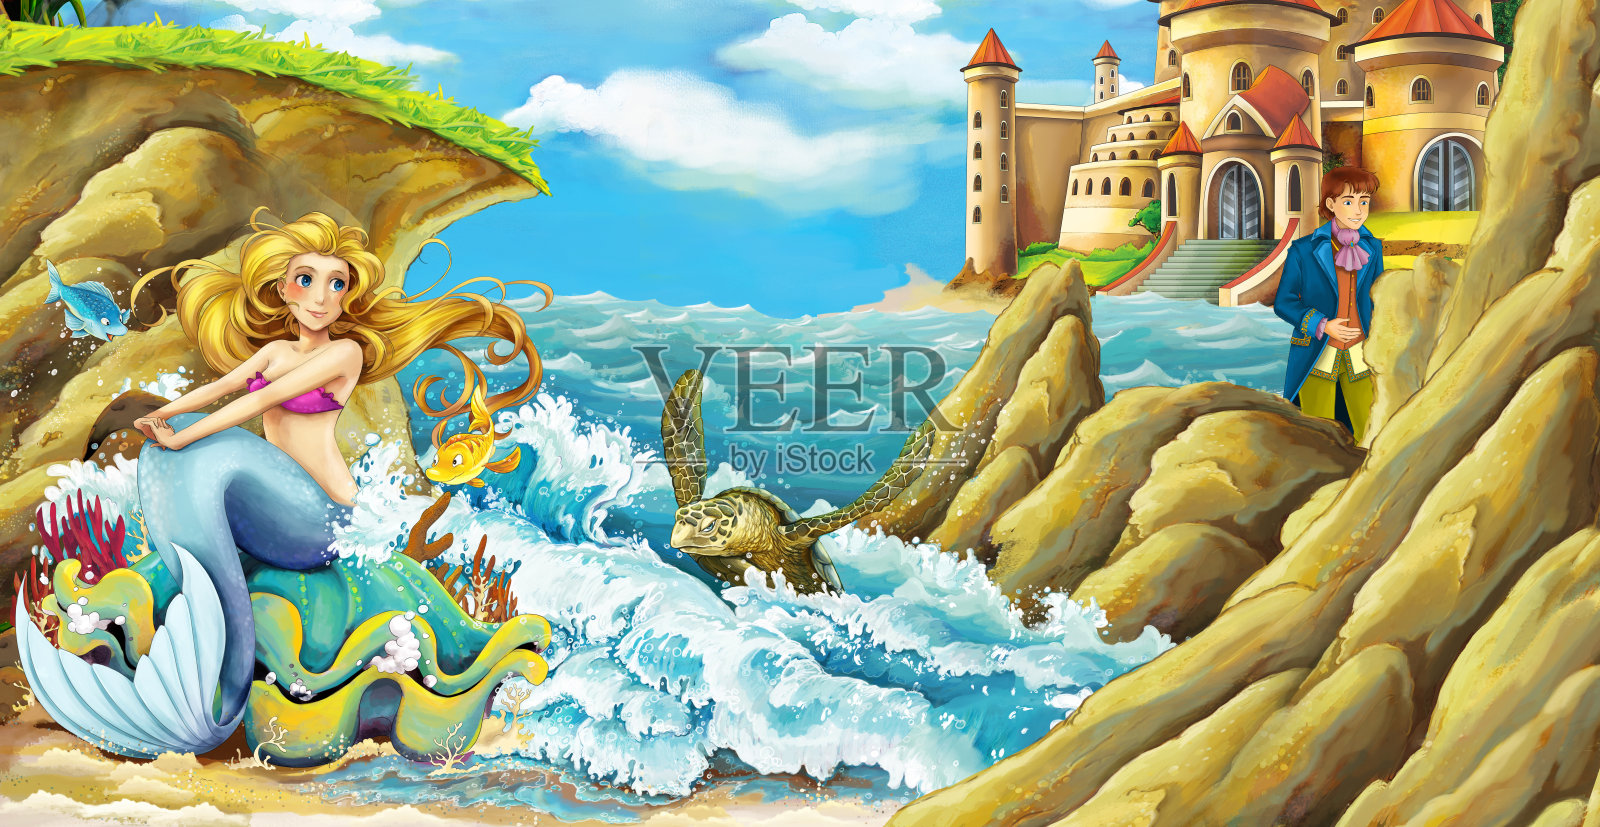 美人鱼公主在海边和美丽的城堡的卡通场景插画图片素材